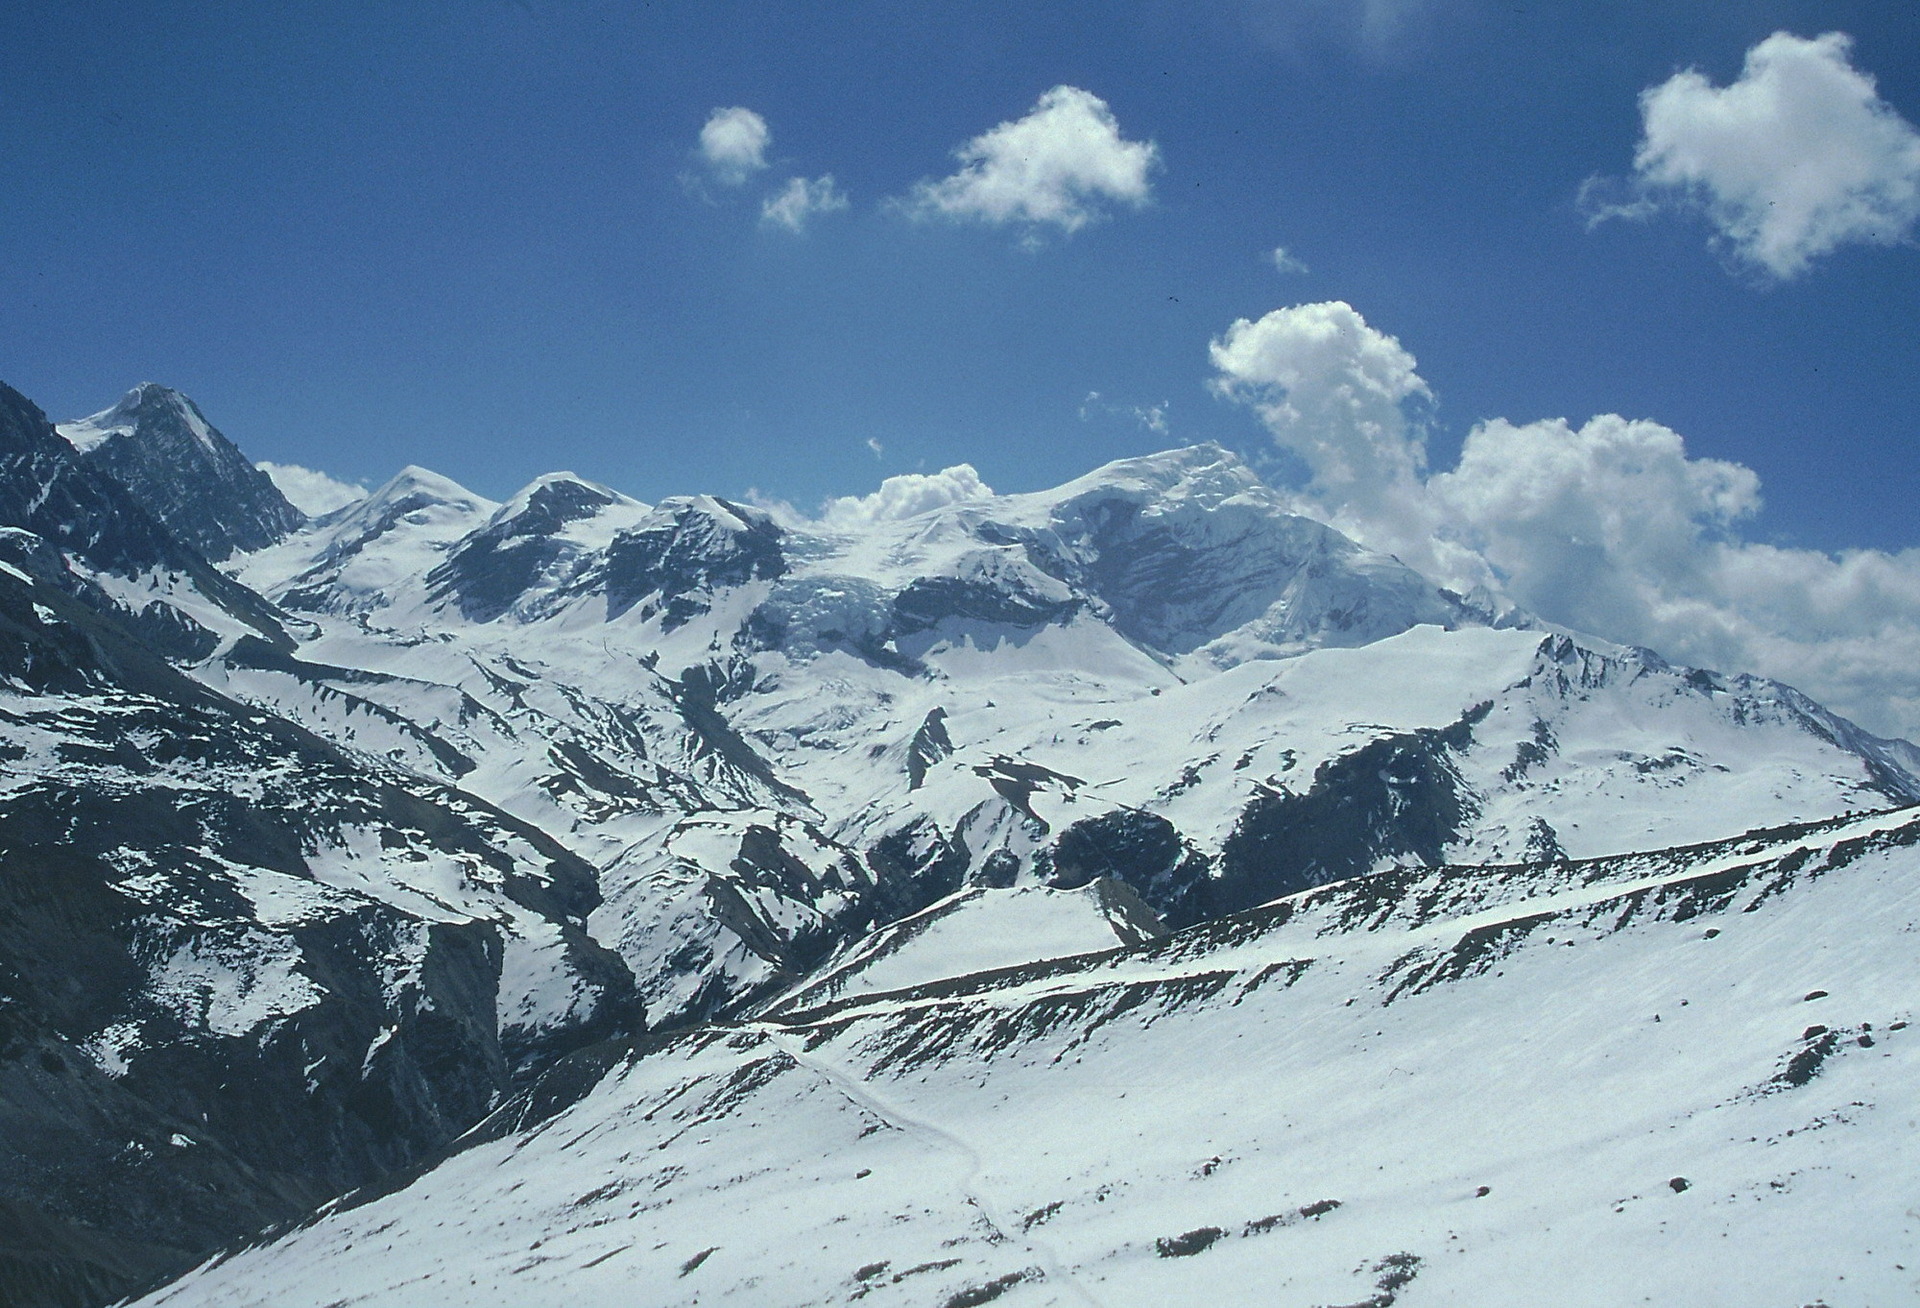 Vrcholy Chulu (6 584 m), pohled zpět z cesty do sedla, dole uprostřed je vidět stezka